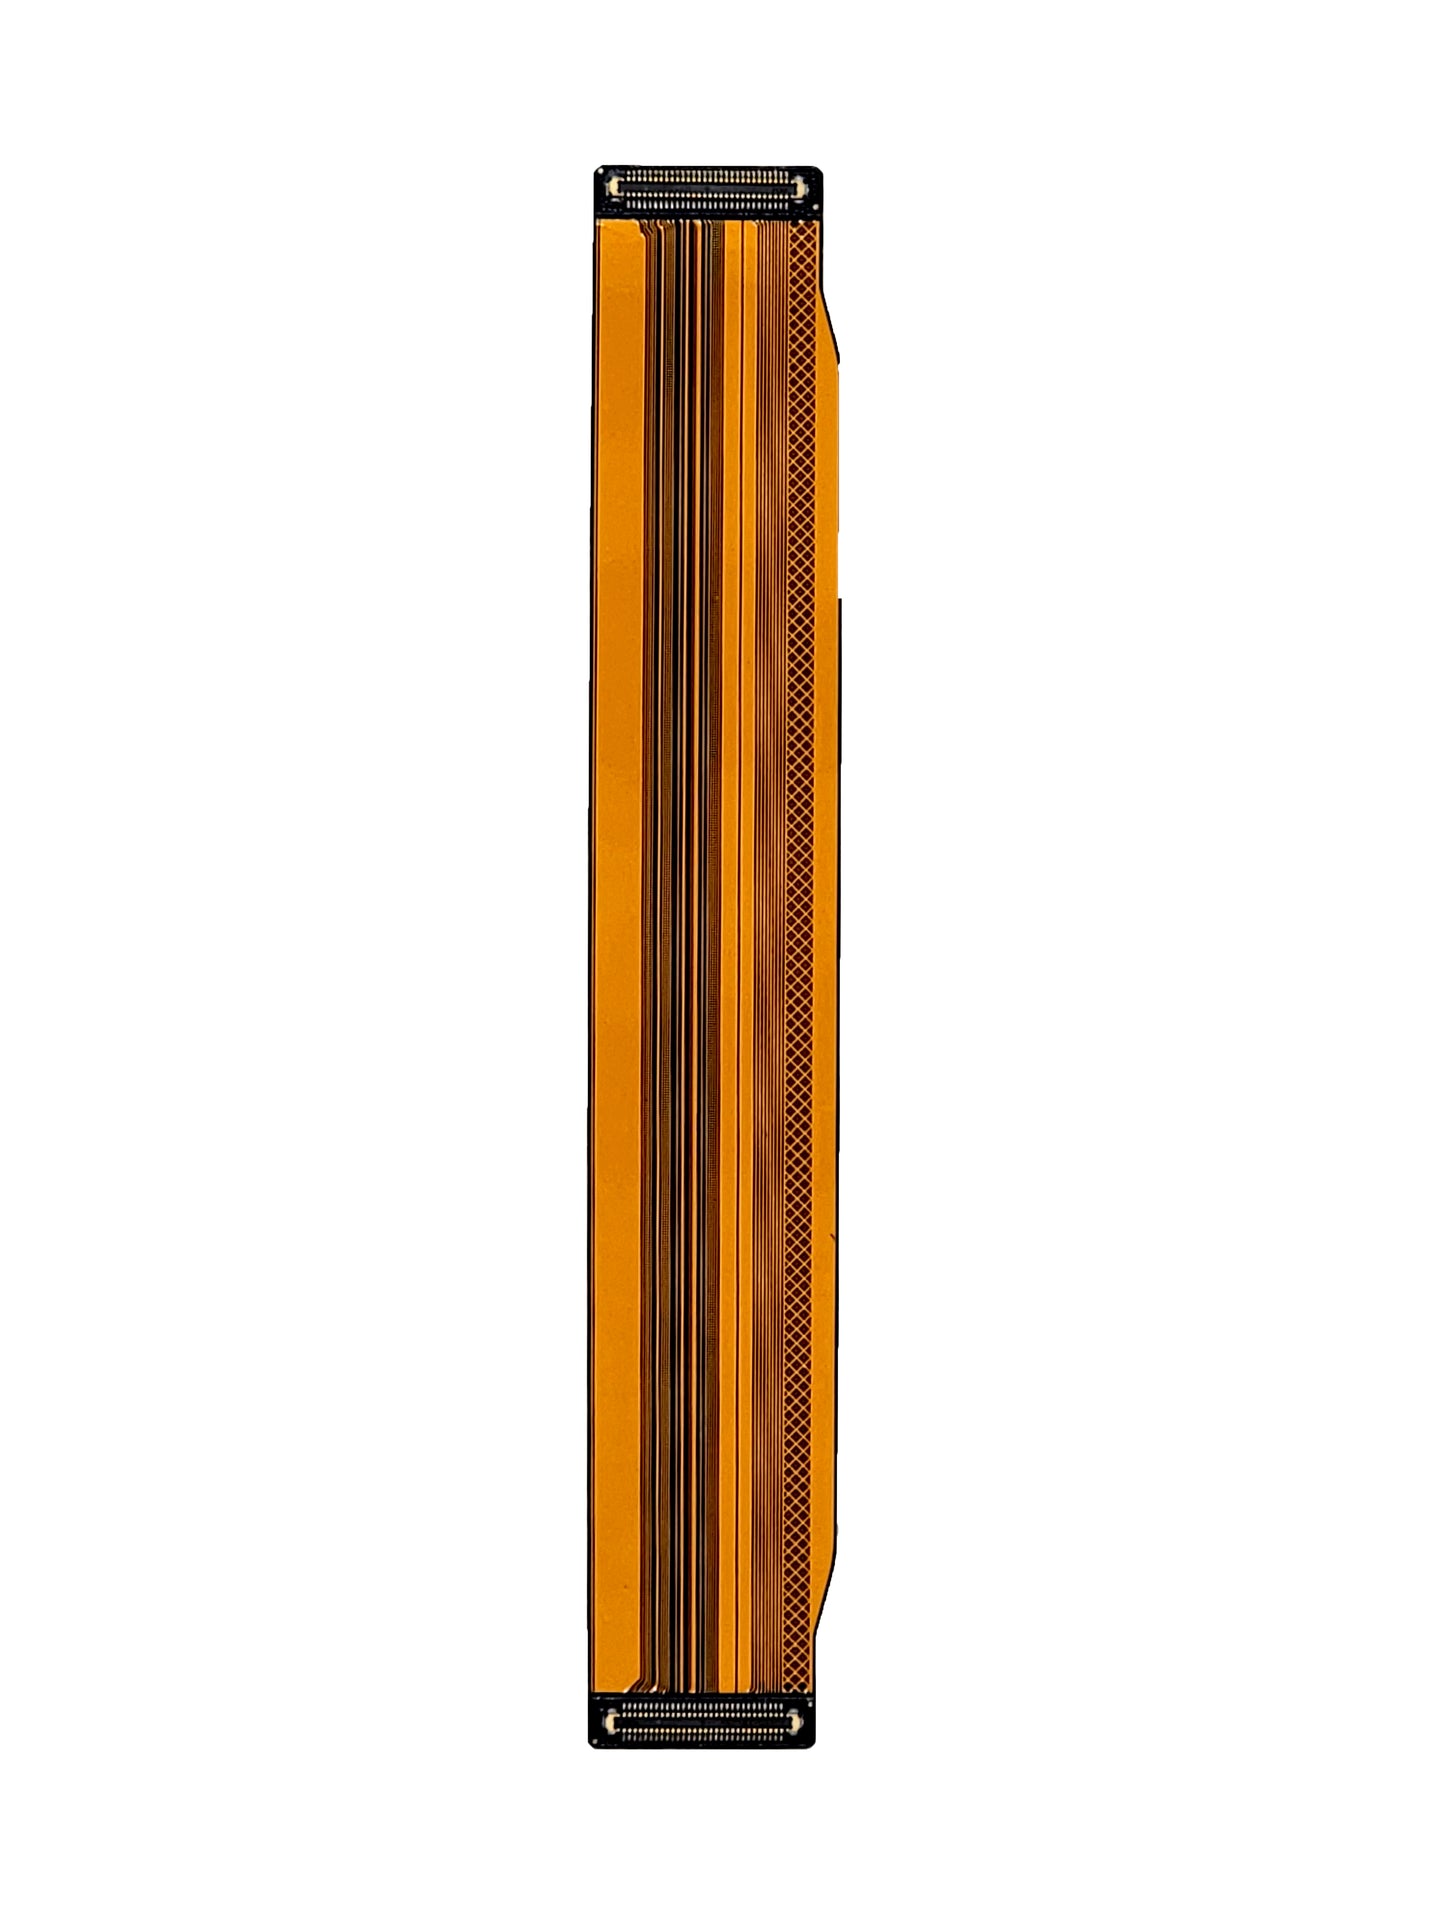 SGS S21 FE Main Board Flex Cable (USA Version)